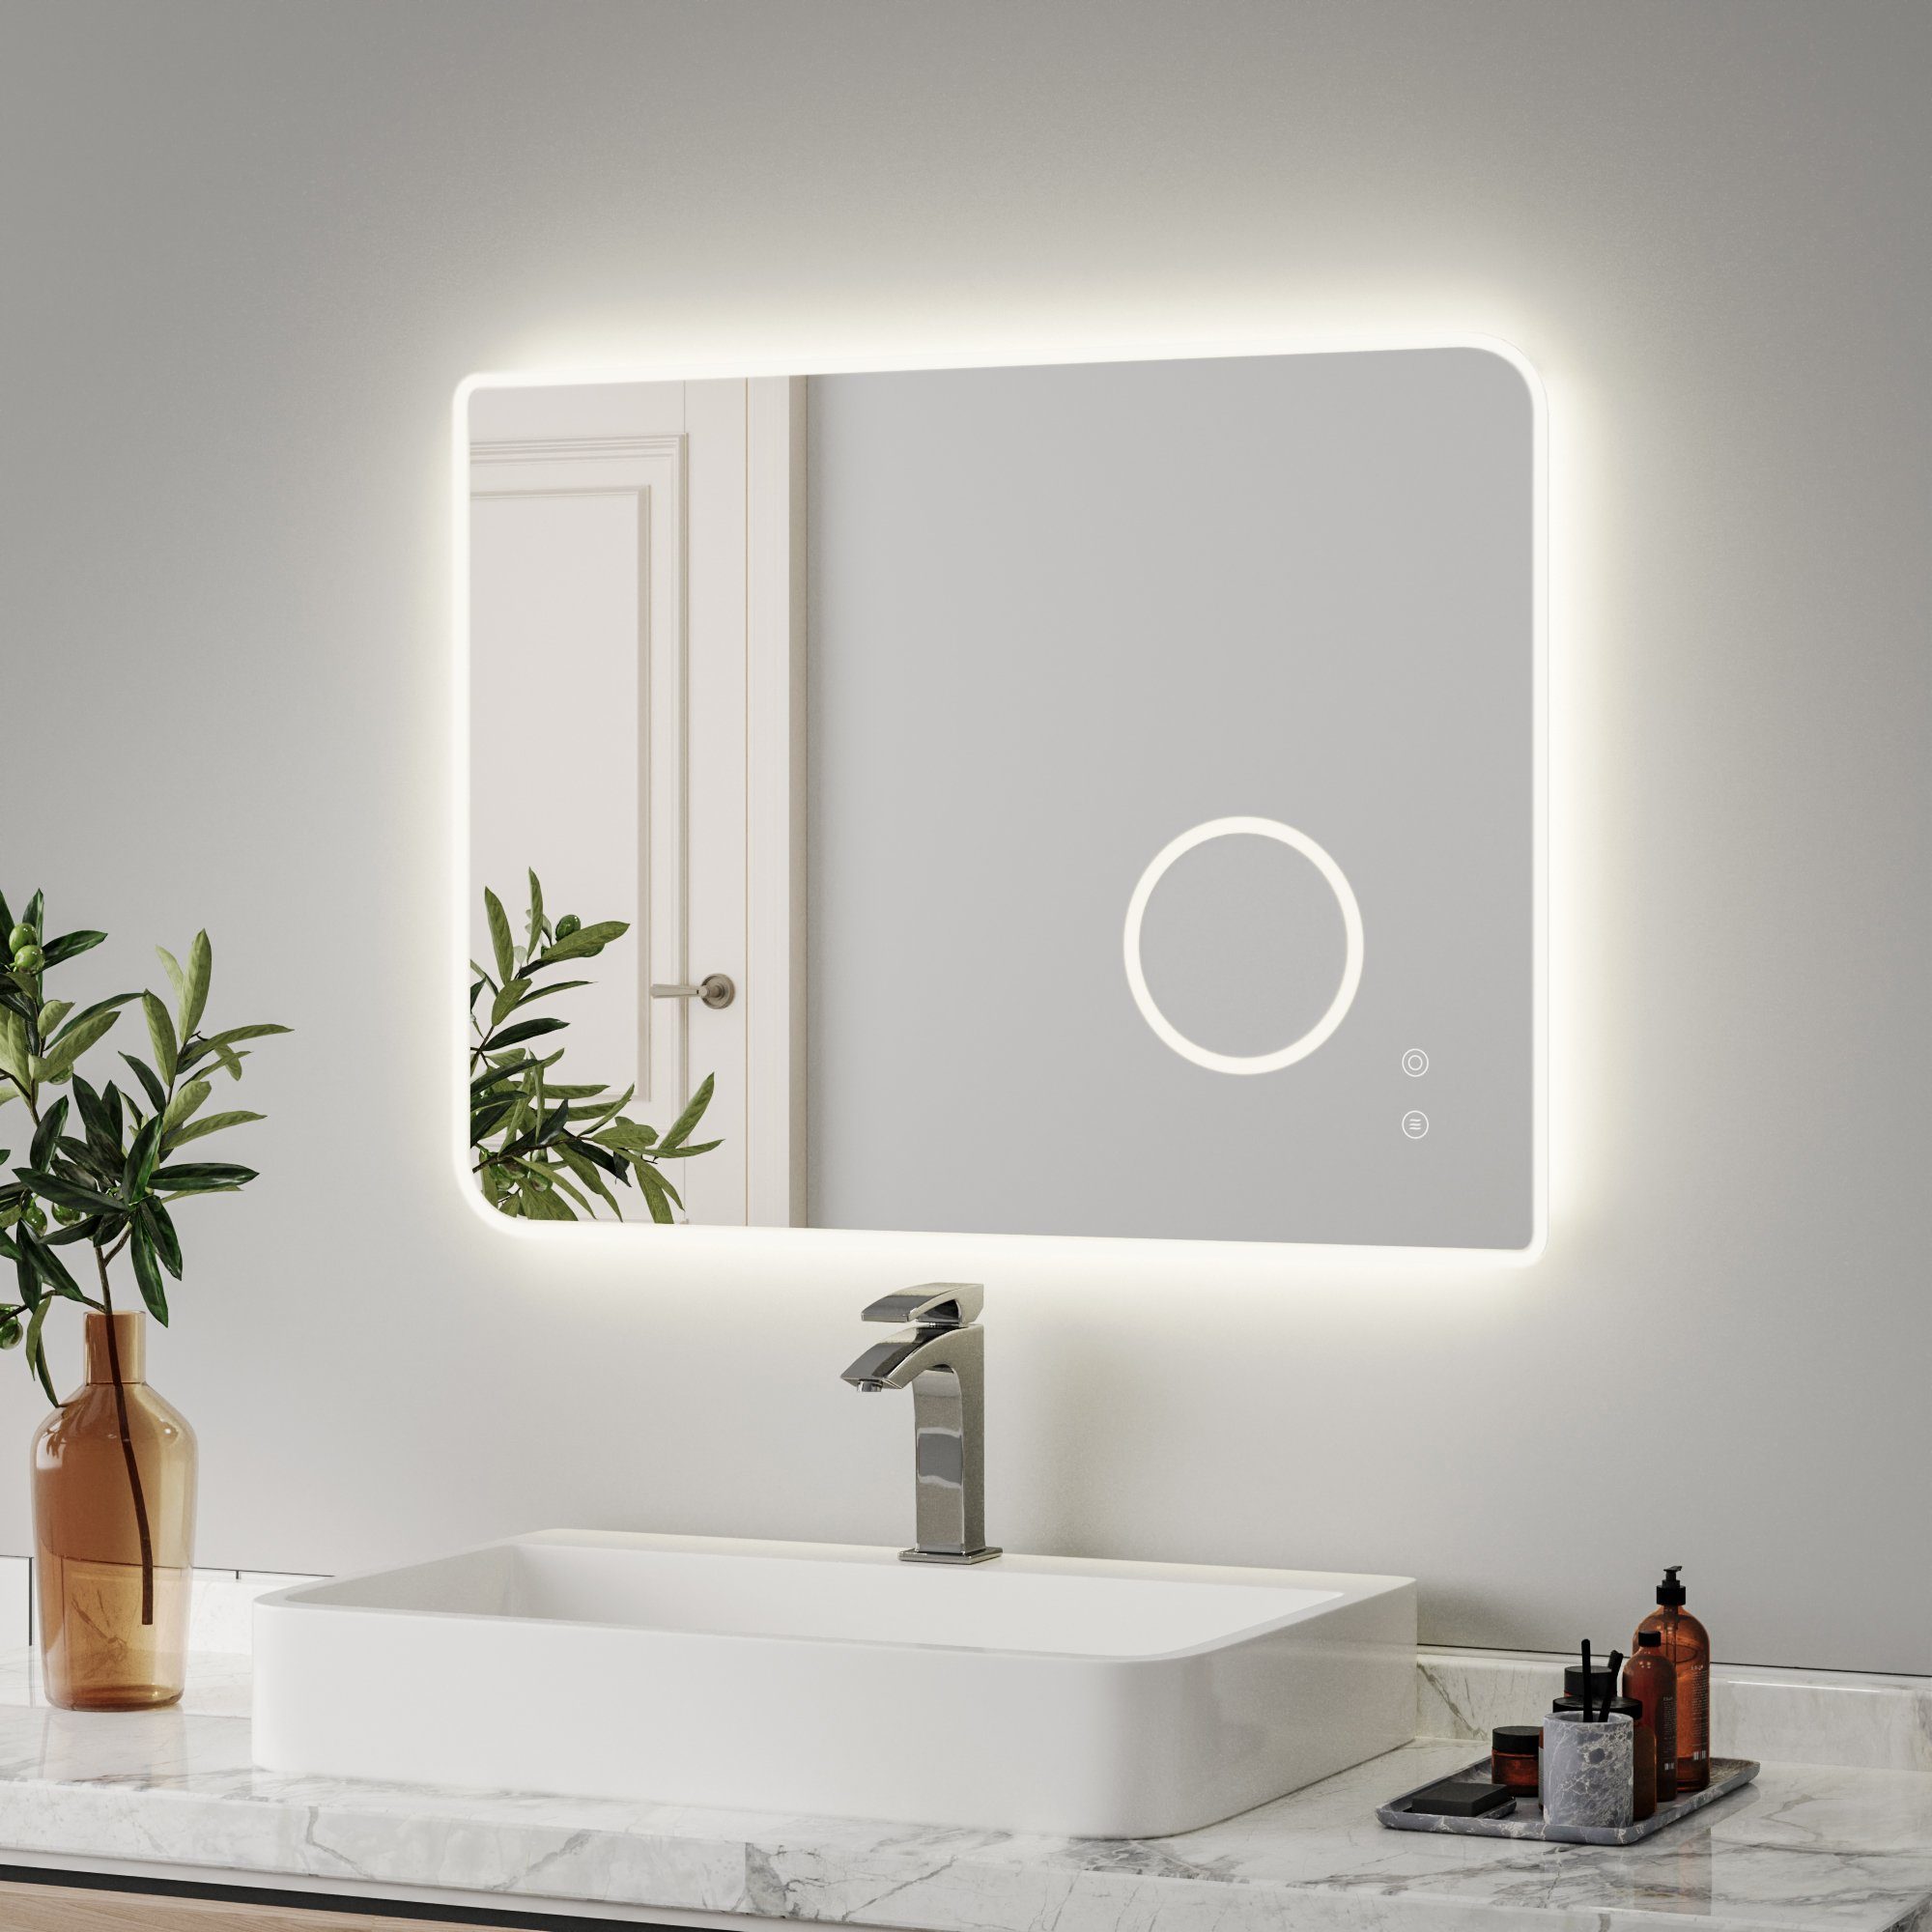 Meerveil Badspiegel Schalter, mit Beleuchtung, Badezimmerspiegel, Antibeschlage, Touch LED 80x60 cm